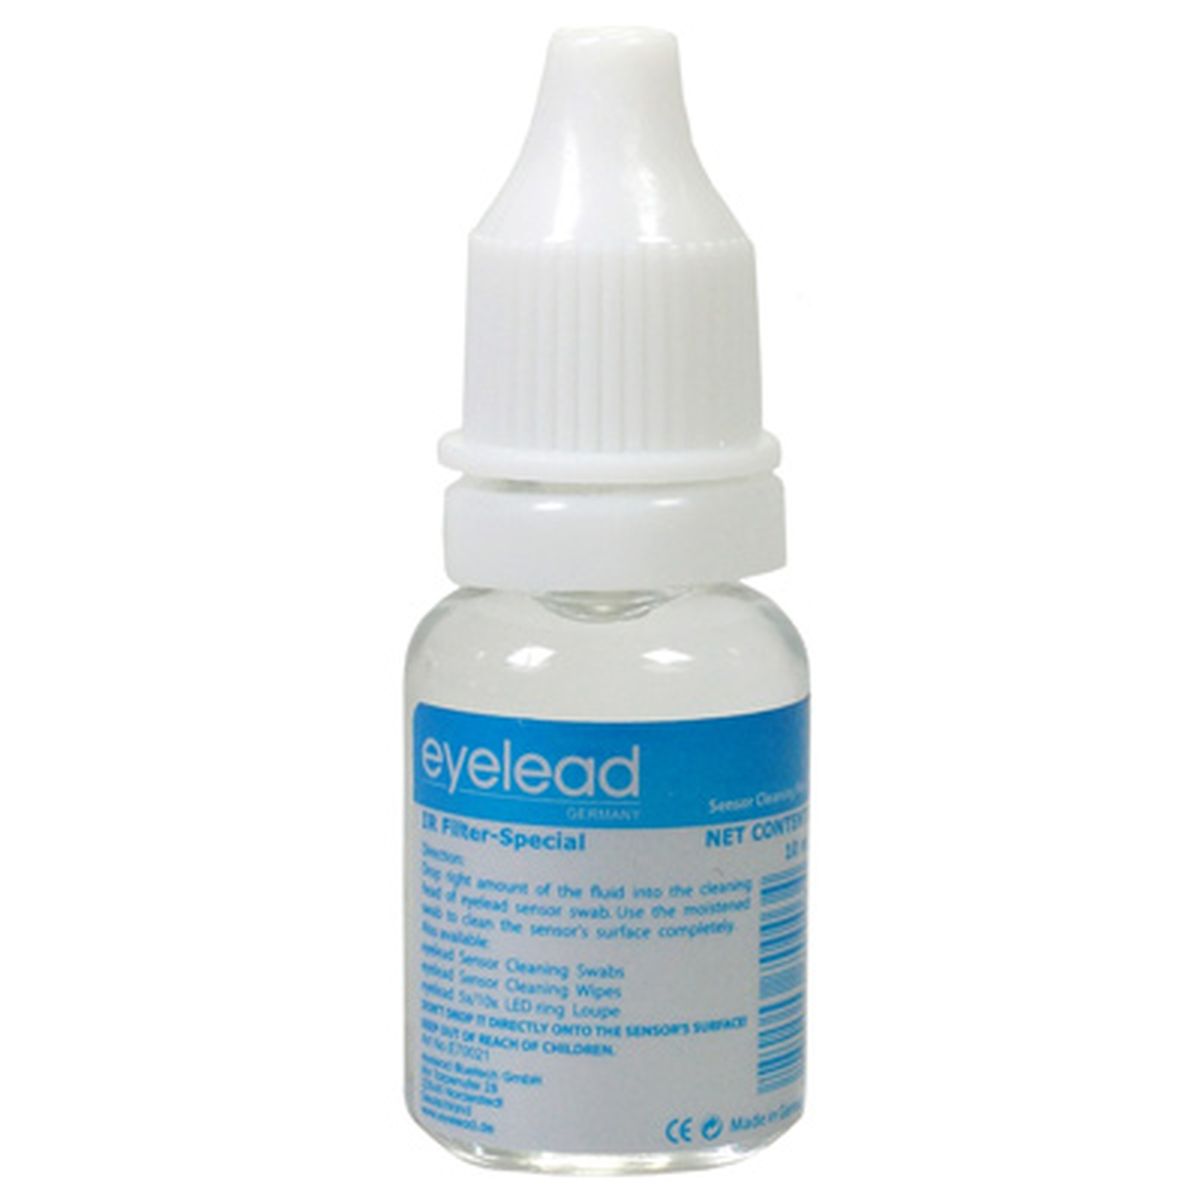 eyelead SCF-1 Sensor Reinigungs-Flüssigkeit, 10 ml